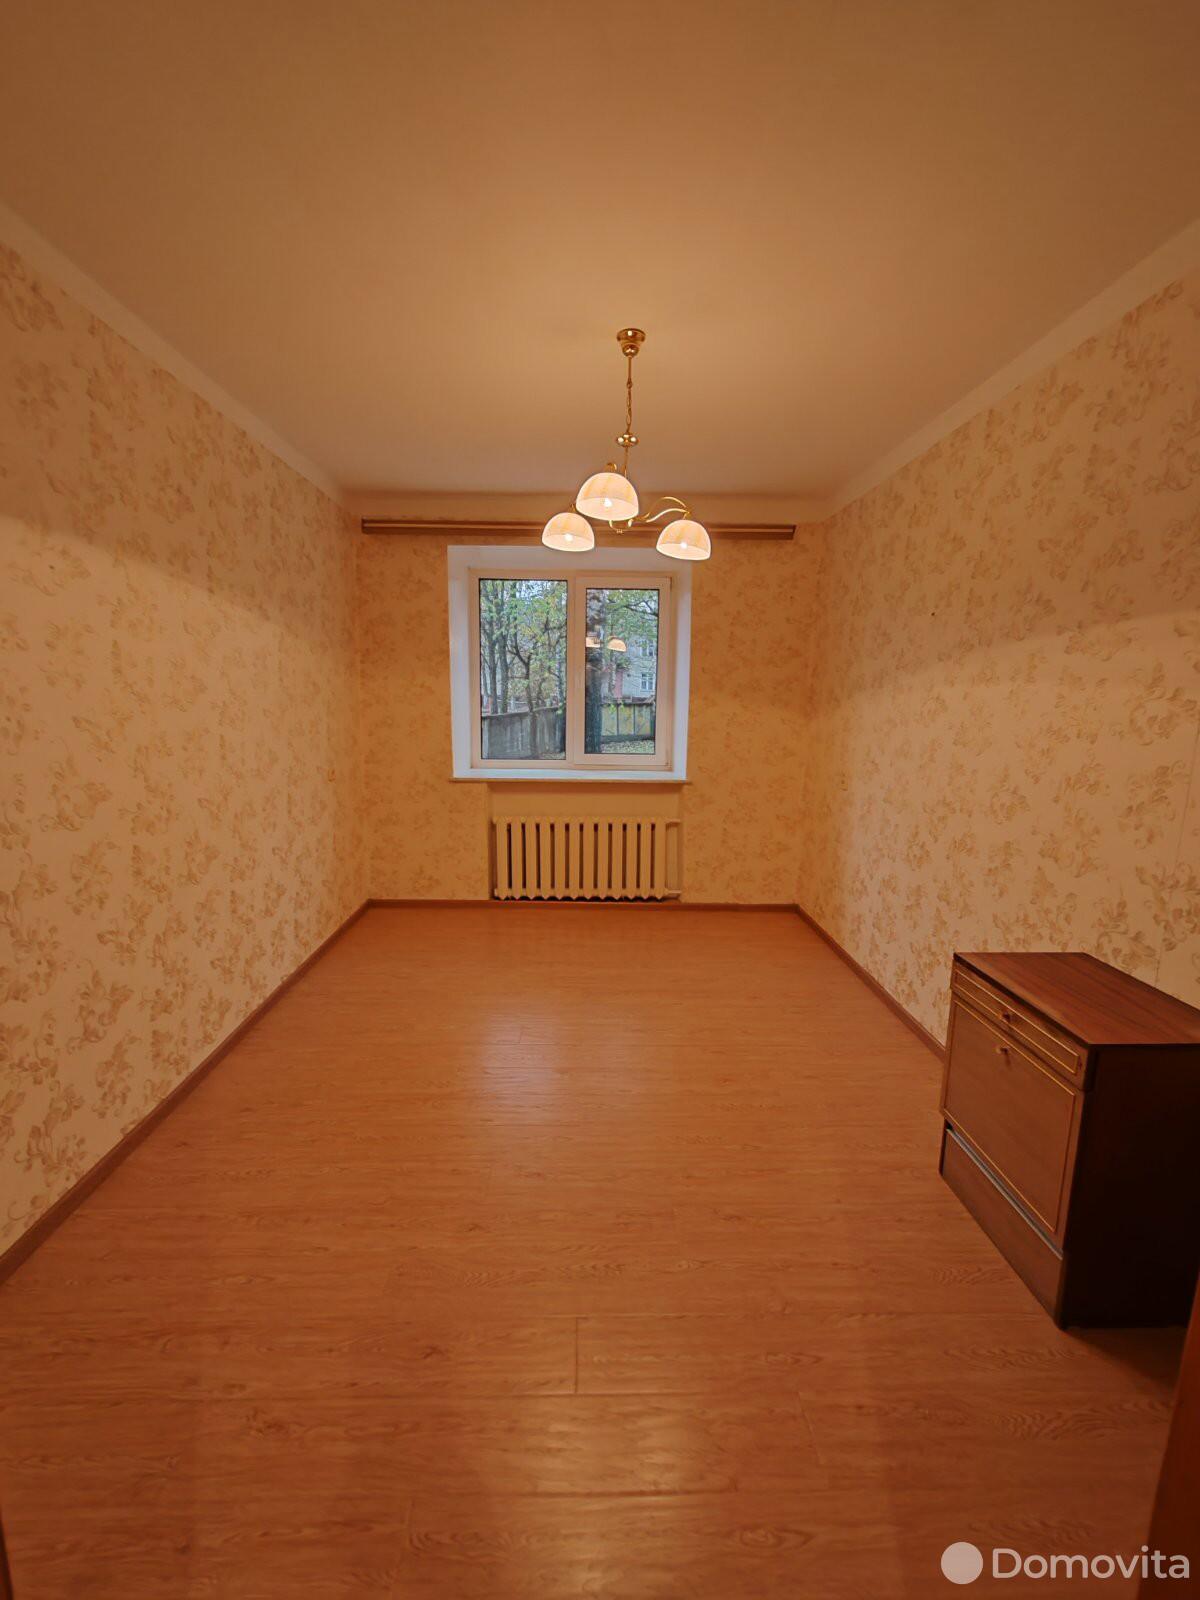 Цена продажи квартиры, Витебск, ул. Ильинского, д. 35